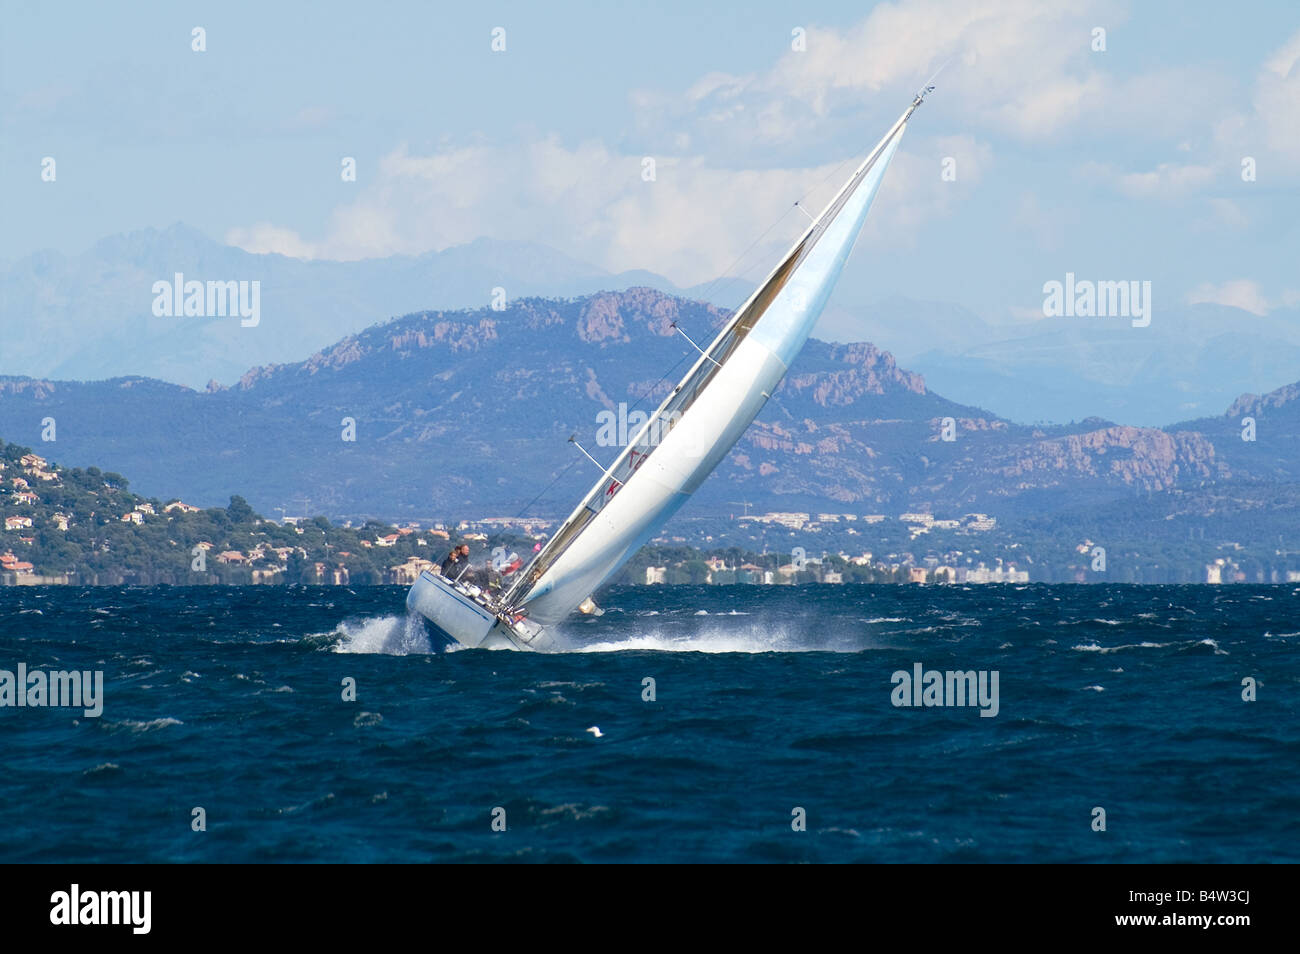 Un yacht dans le golfe de St Tropez Banque D'Images